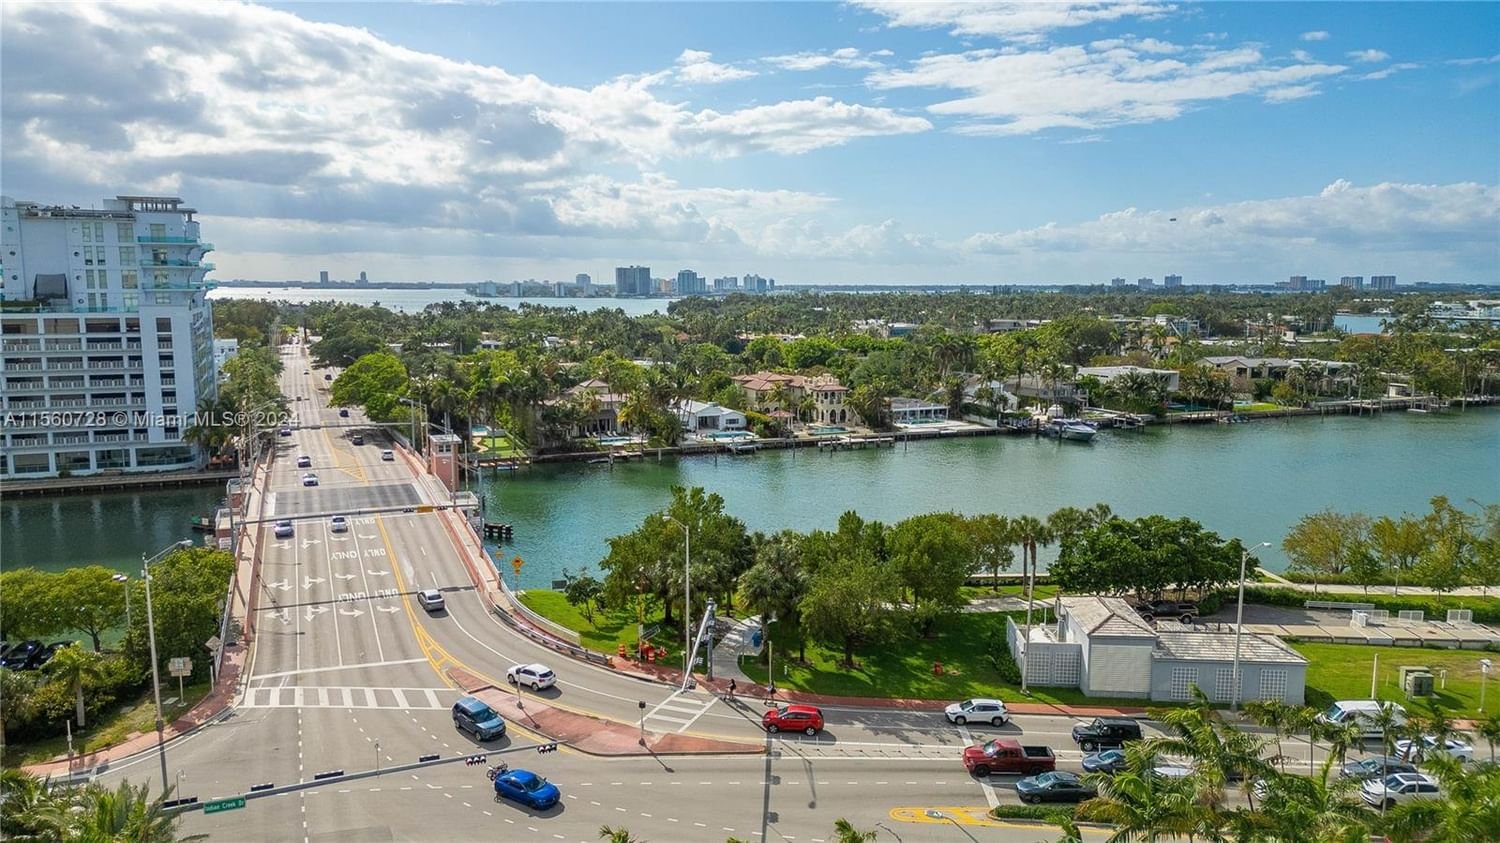 Real estate property located at 6301 Collins Ave #907, Miami-Dade County, LA GORCE PALACE CONDO, Miami Beach, FL